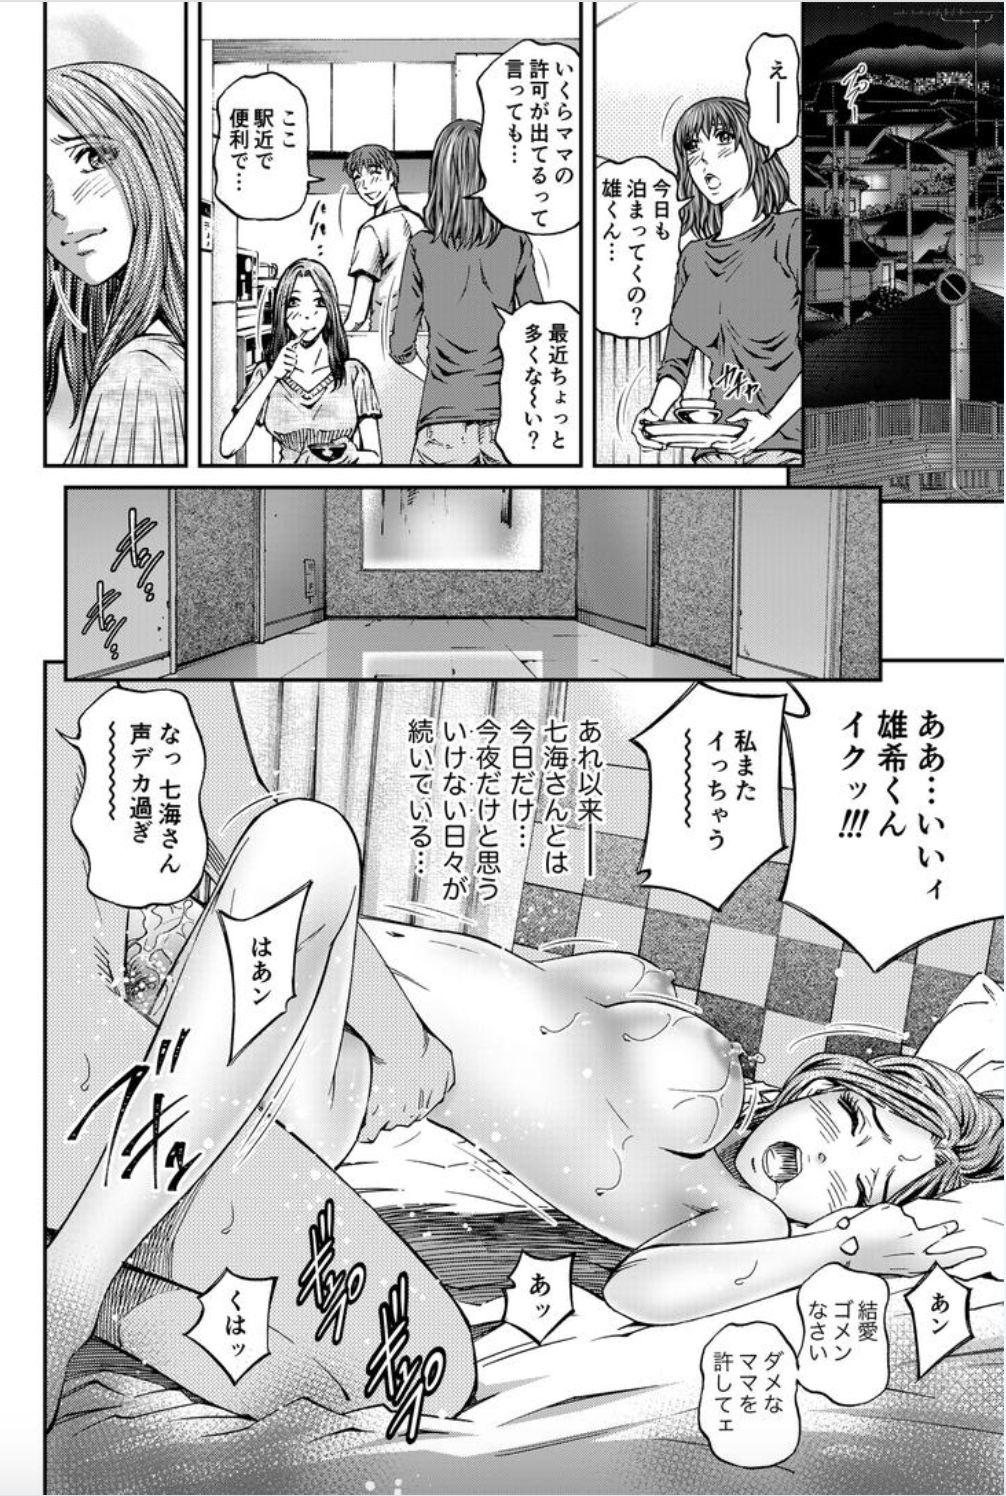 Young Petite Porn Onna-tachi ga Iku Toki... Ero Drama Vol. 8 Datte, Kanojo no Haha ga... Nudist - Page 20